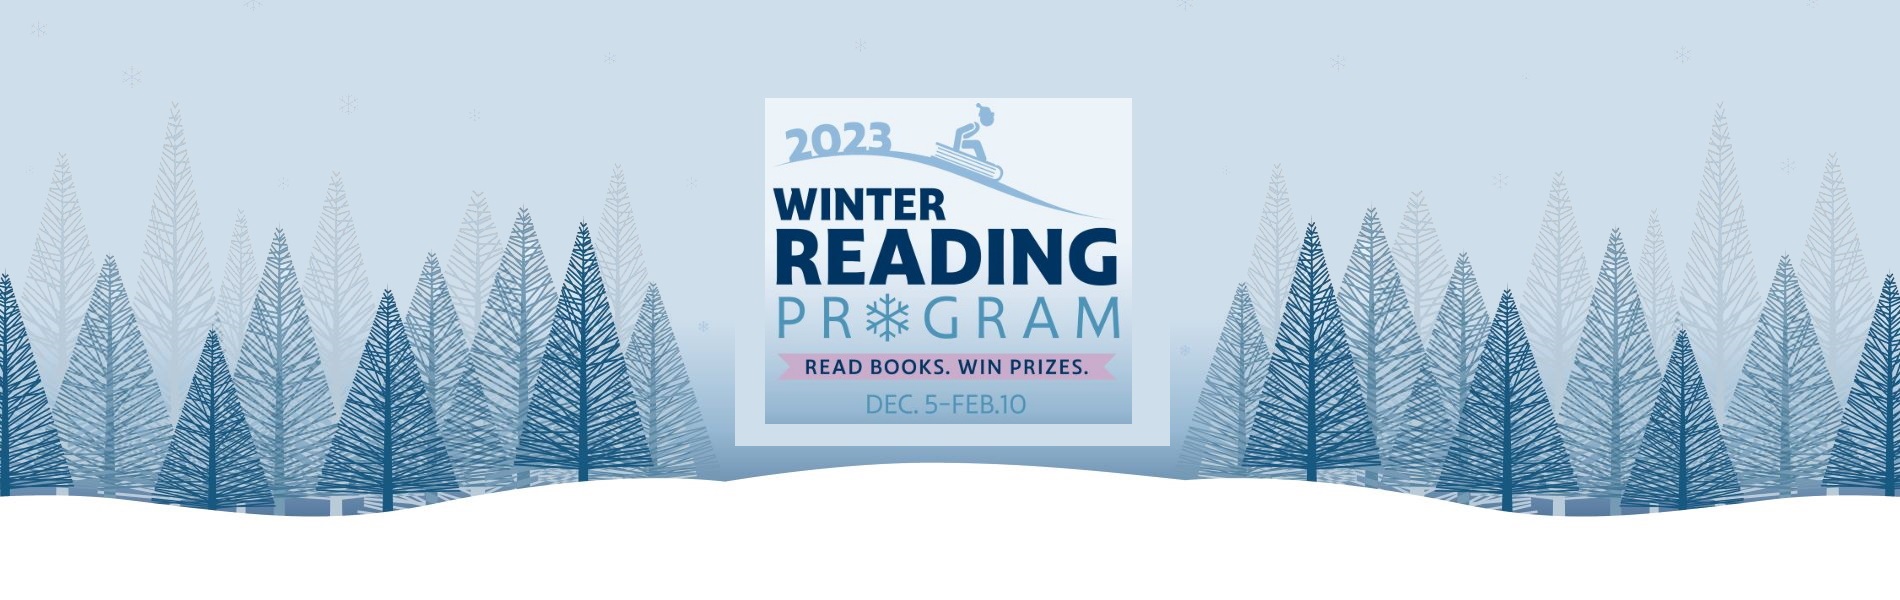 LIB22_170-Winter-Reading-Program-Digital-Social-Media-Materials-HomepageBanner2.jpg